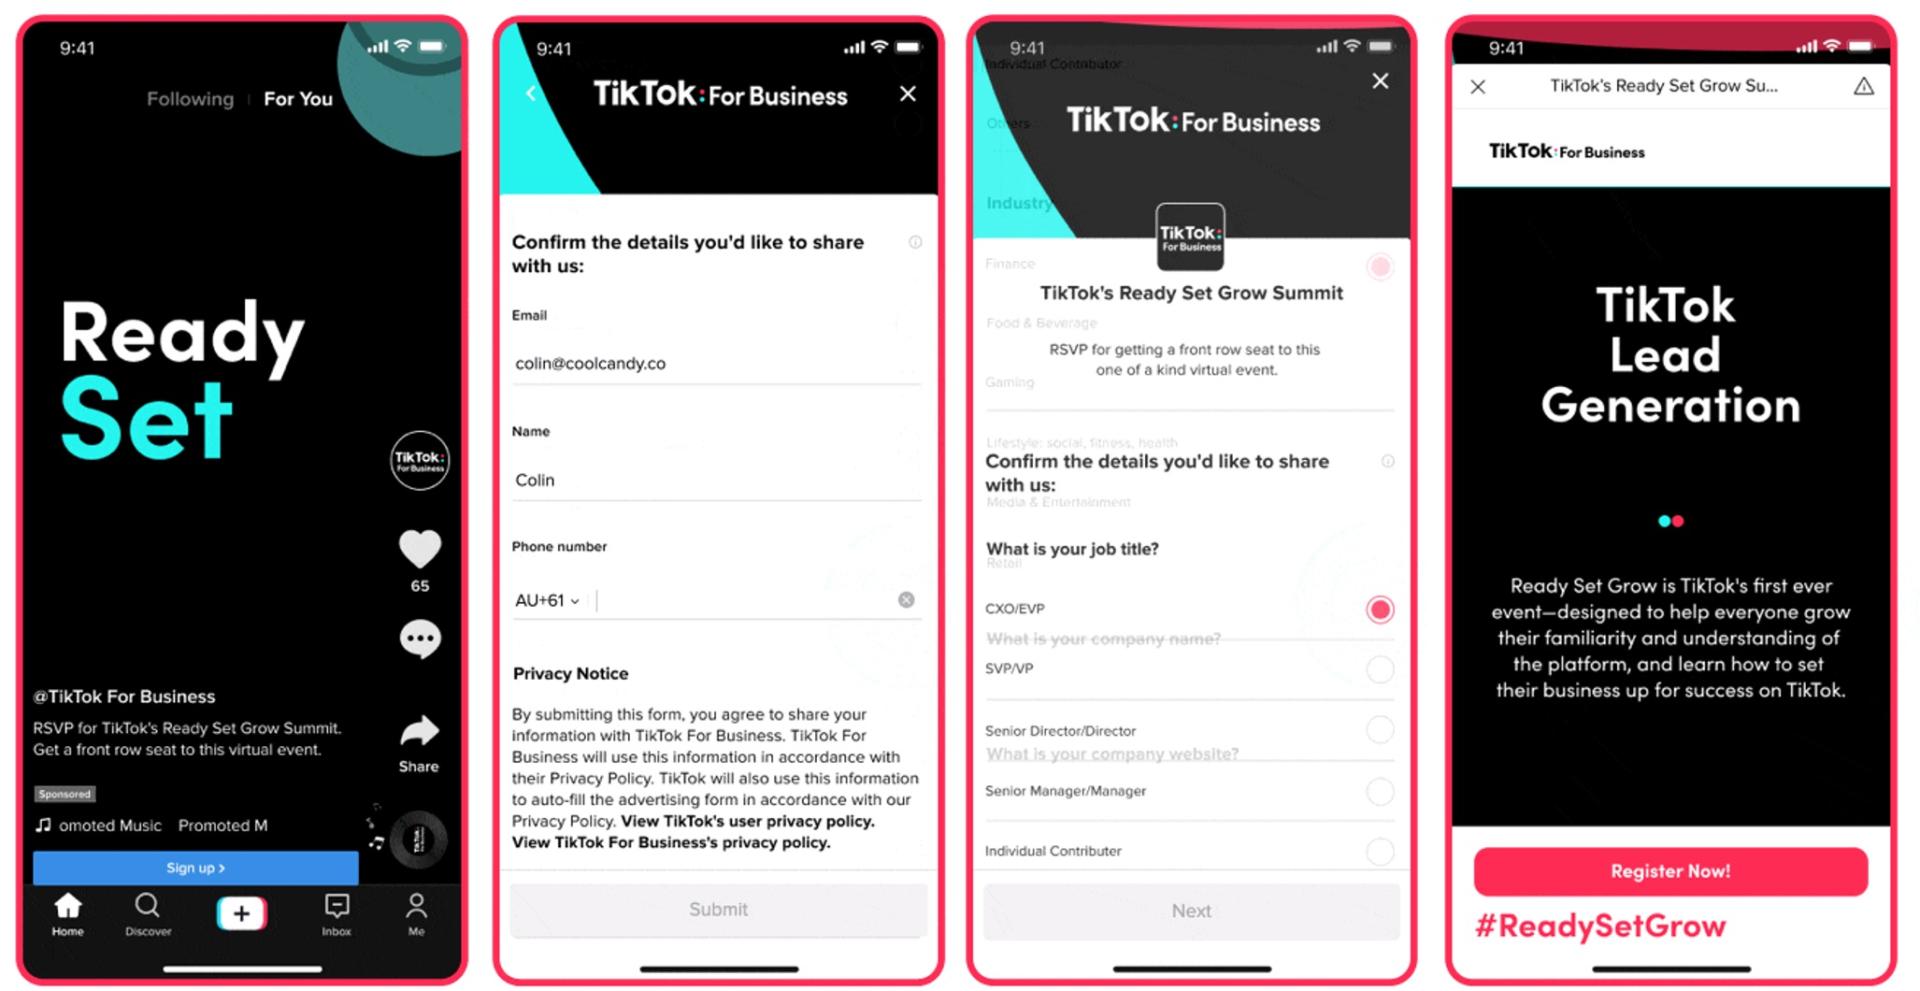 Ways to generate lead on TikTok - Utilize TikTok Lead Generation ads